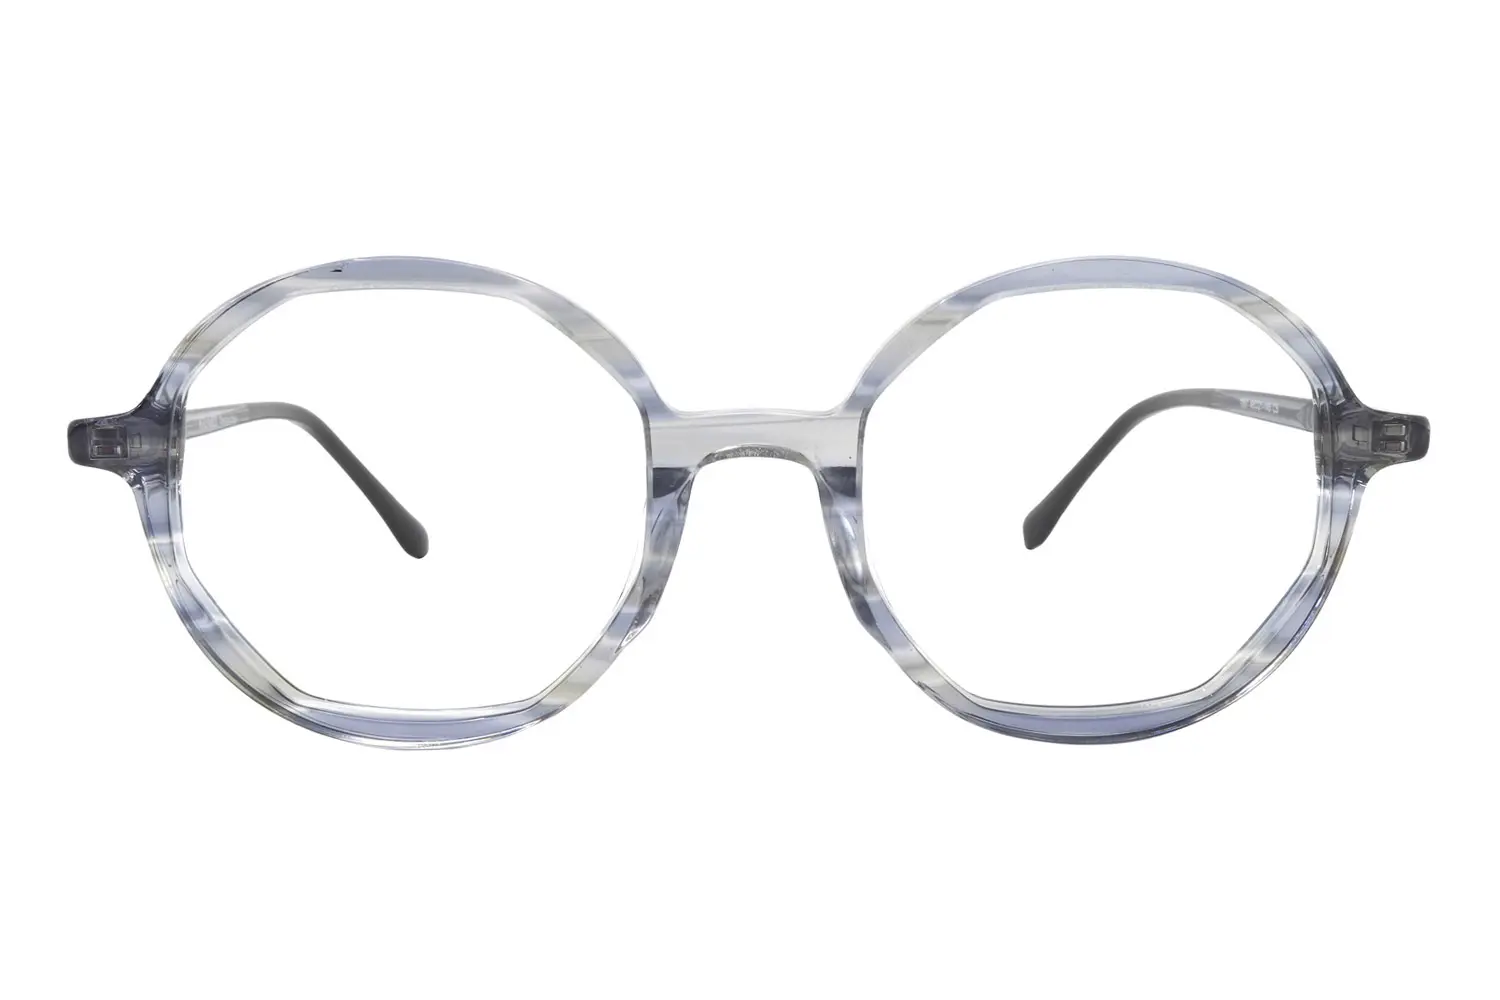 عینک طبی IGUARD مدل 7857 C5 - دکترعینک